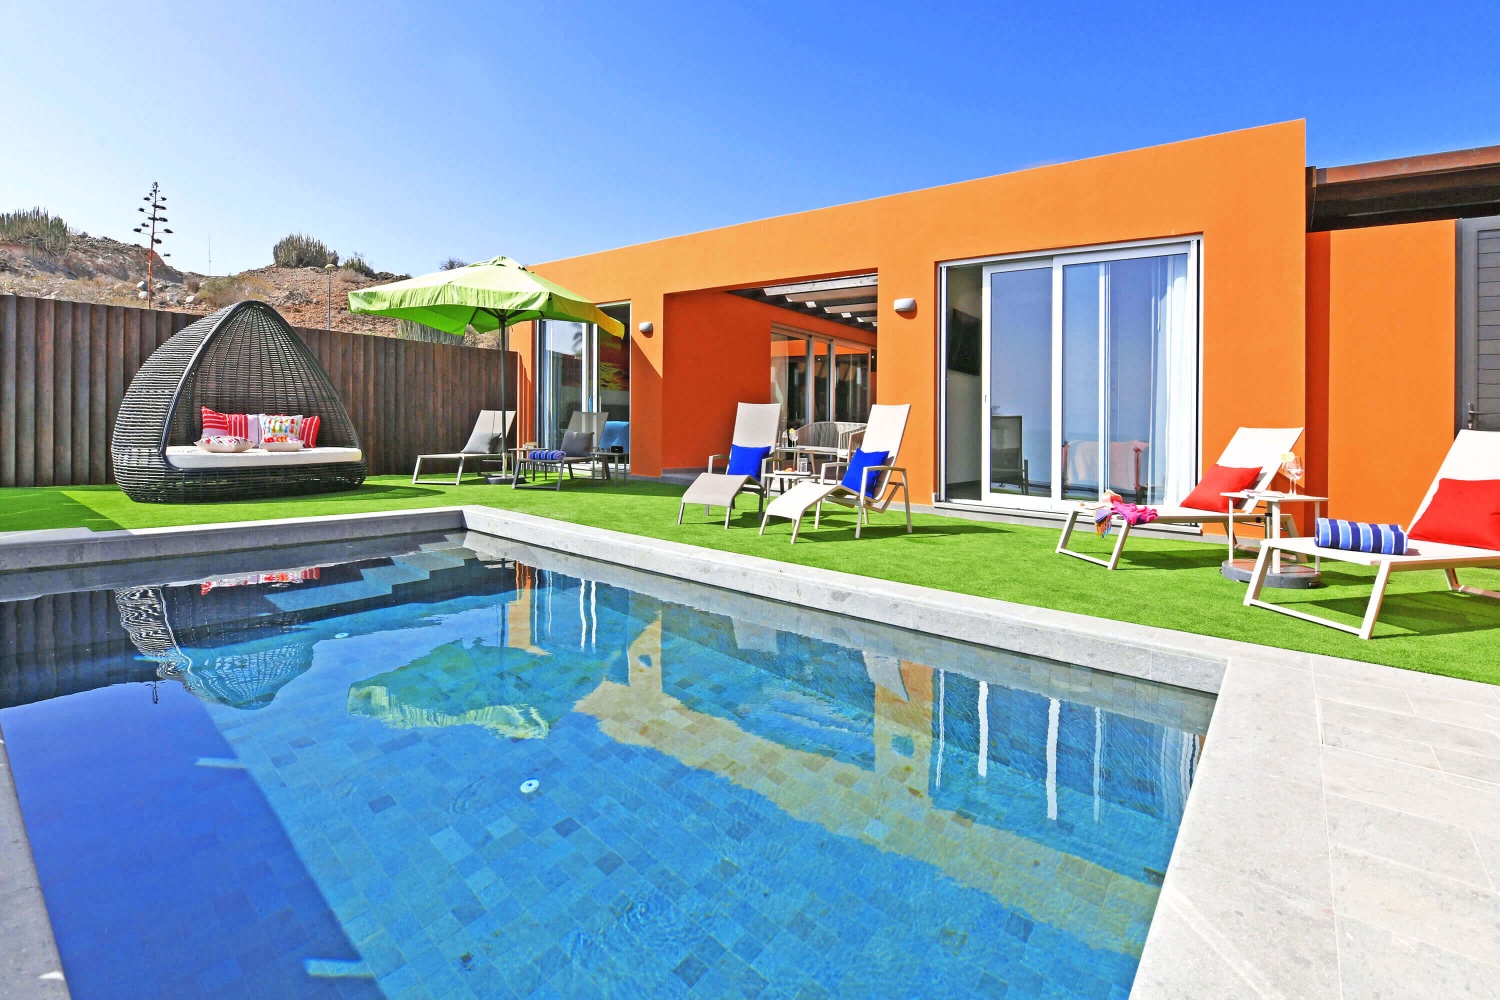 Bungalow de luxe moderne avec tout le confort, des intérieurs de bon goût et un espace extérieur confortable avec terrasse ensoleillée, piscine privée et vue sur la mer, ainsi qu'un patio avec coin repas